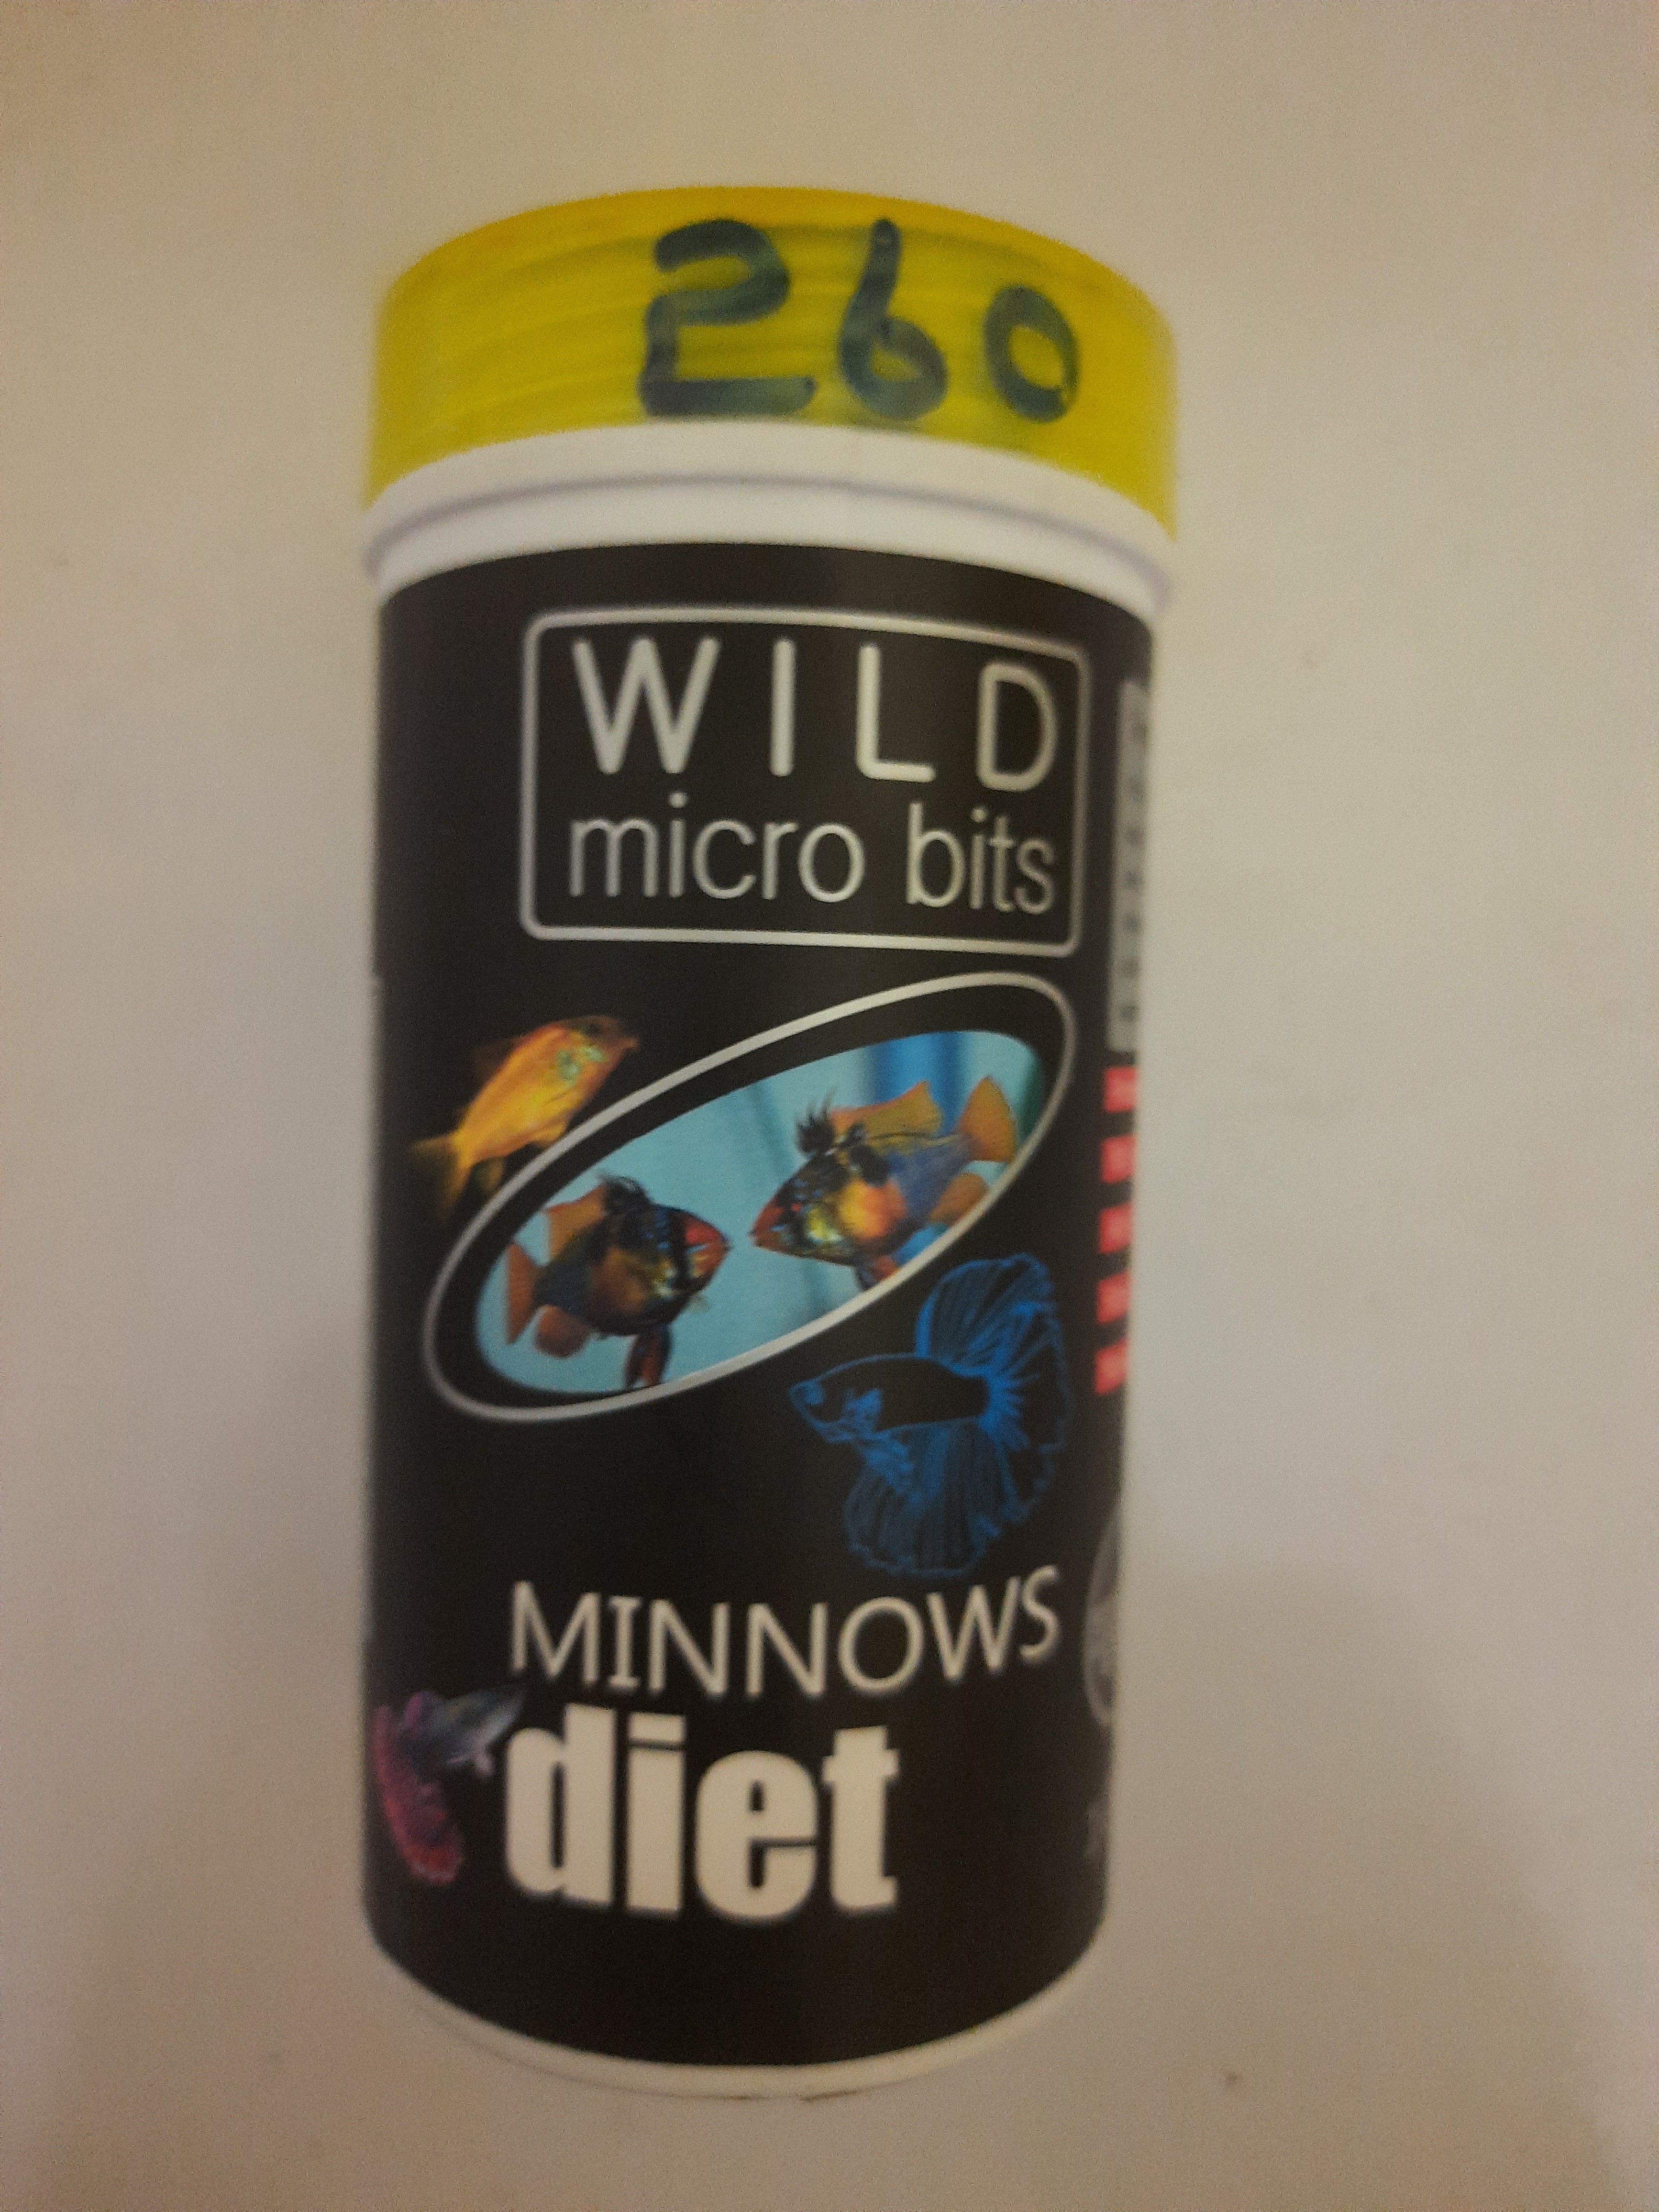 Minnows 100 Grams Wild Micro Bits